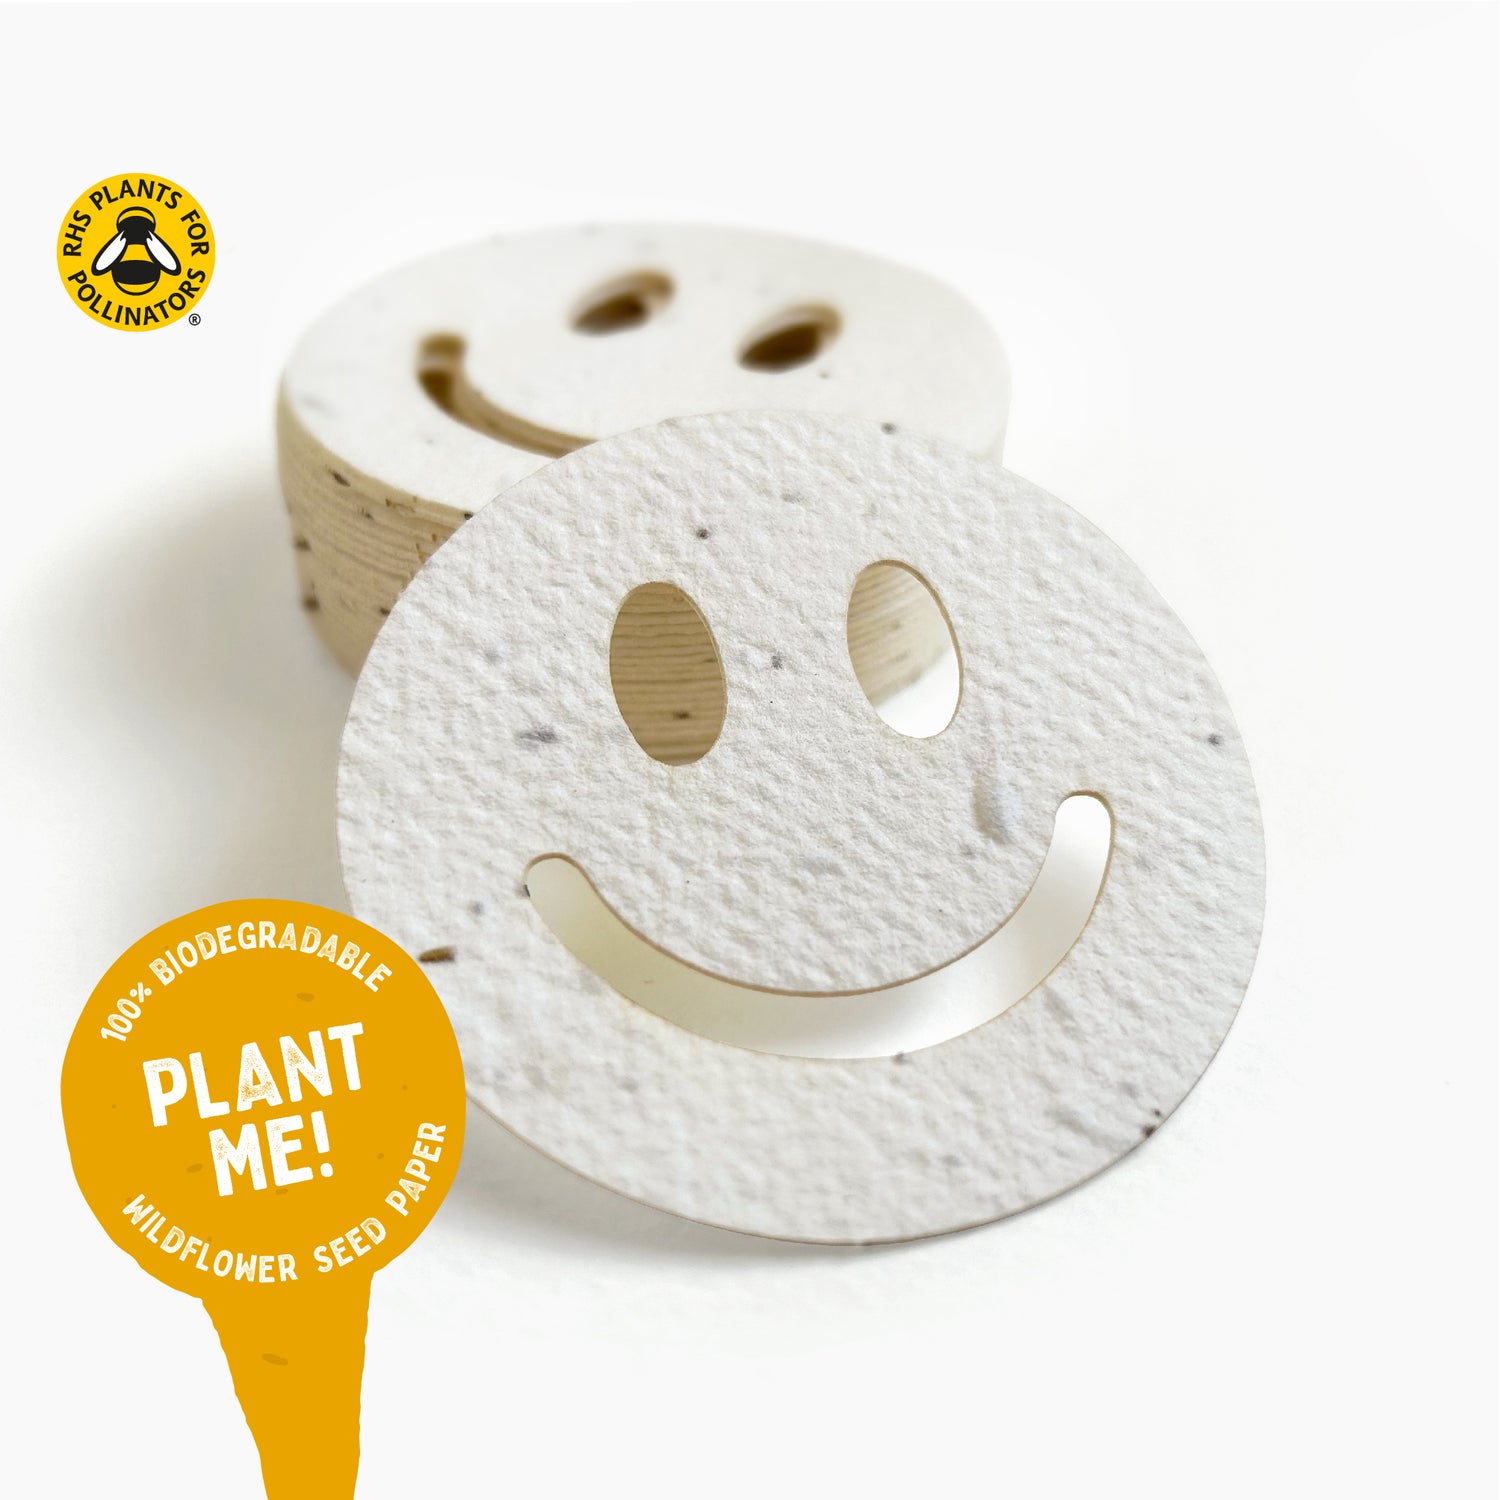 Bee Happy Plantable Paper Smiles